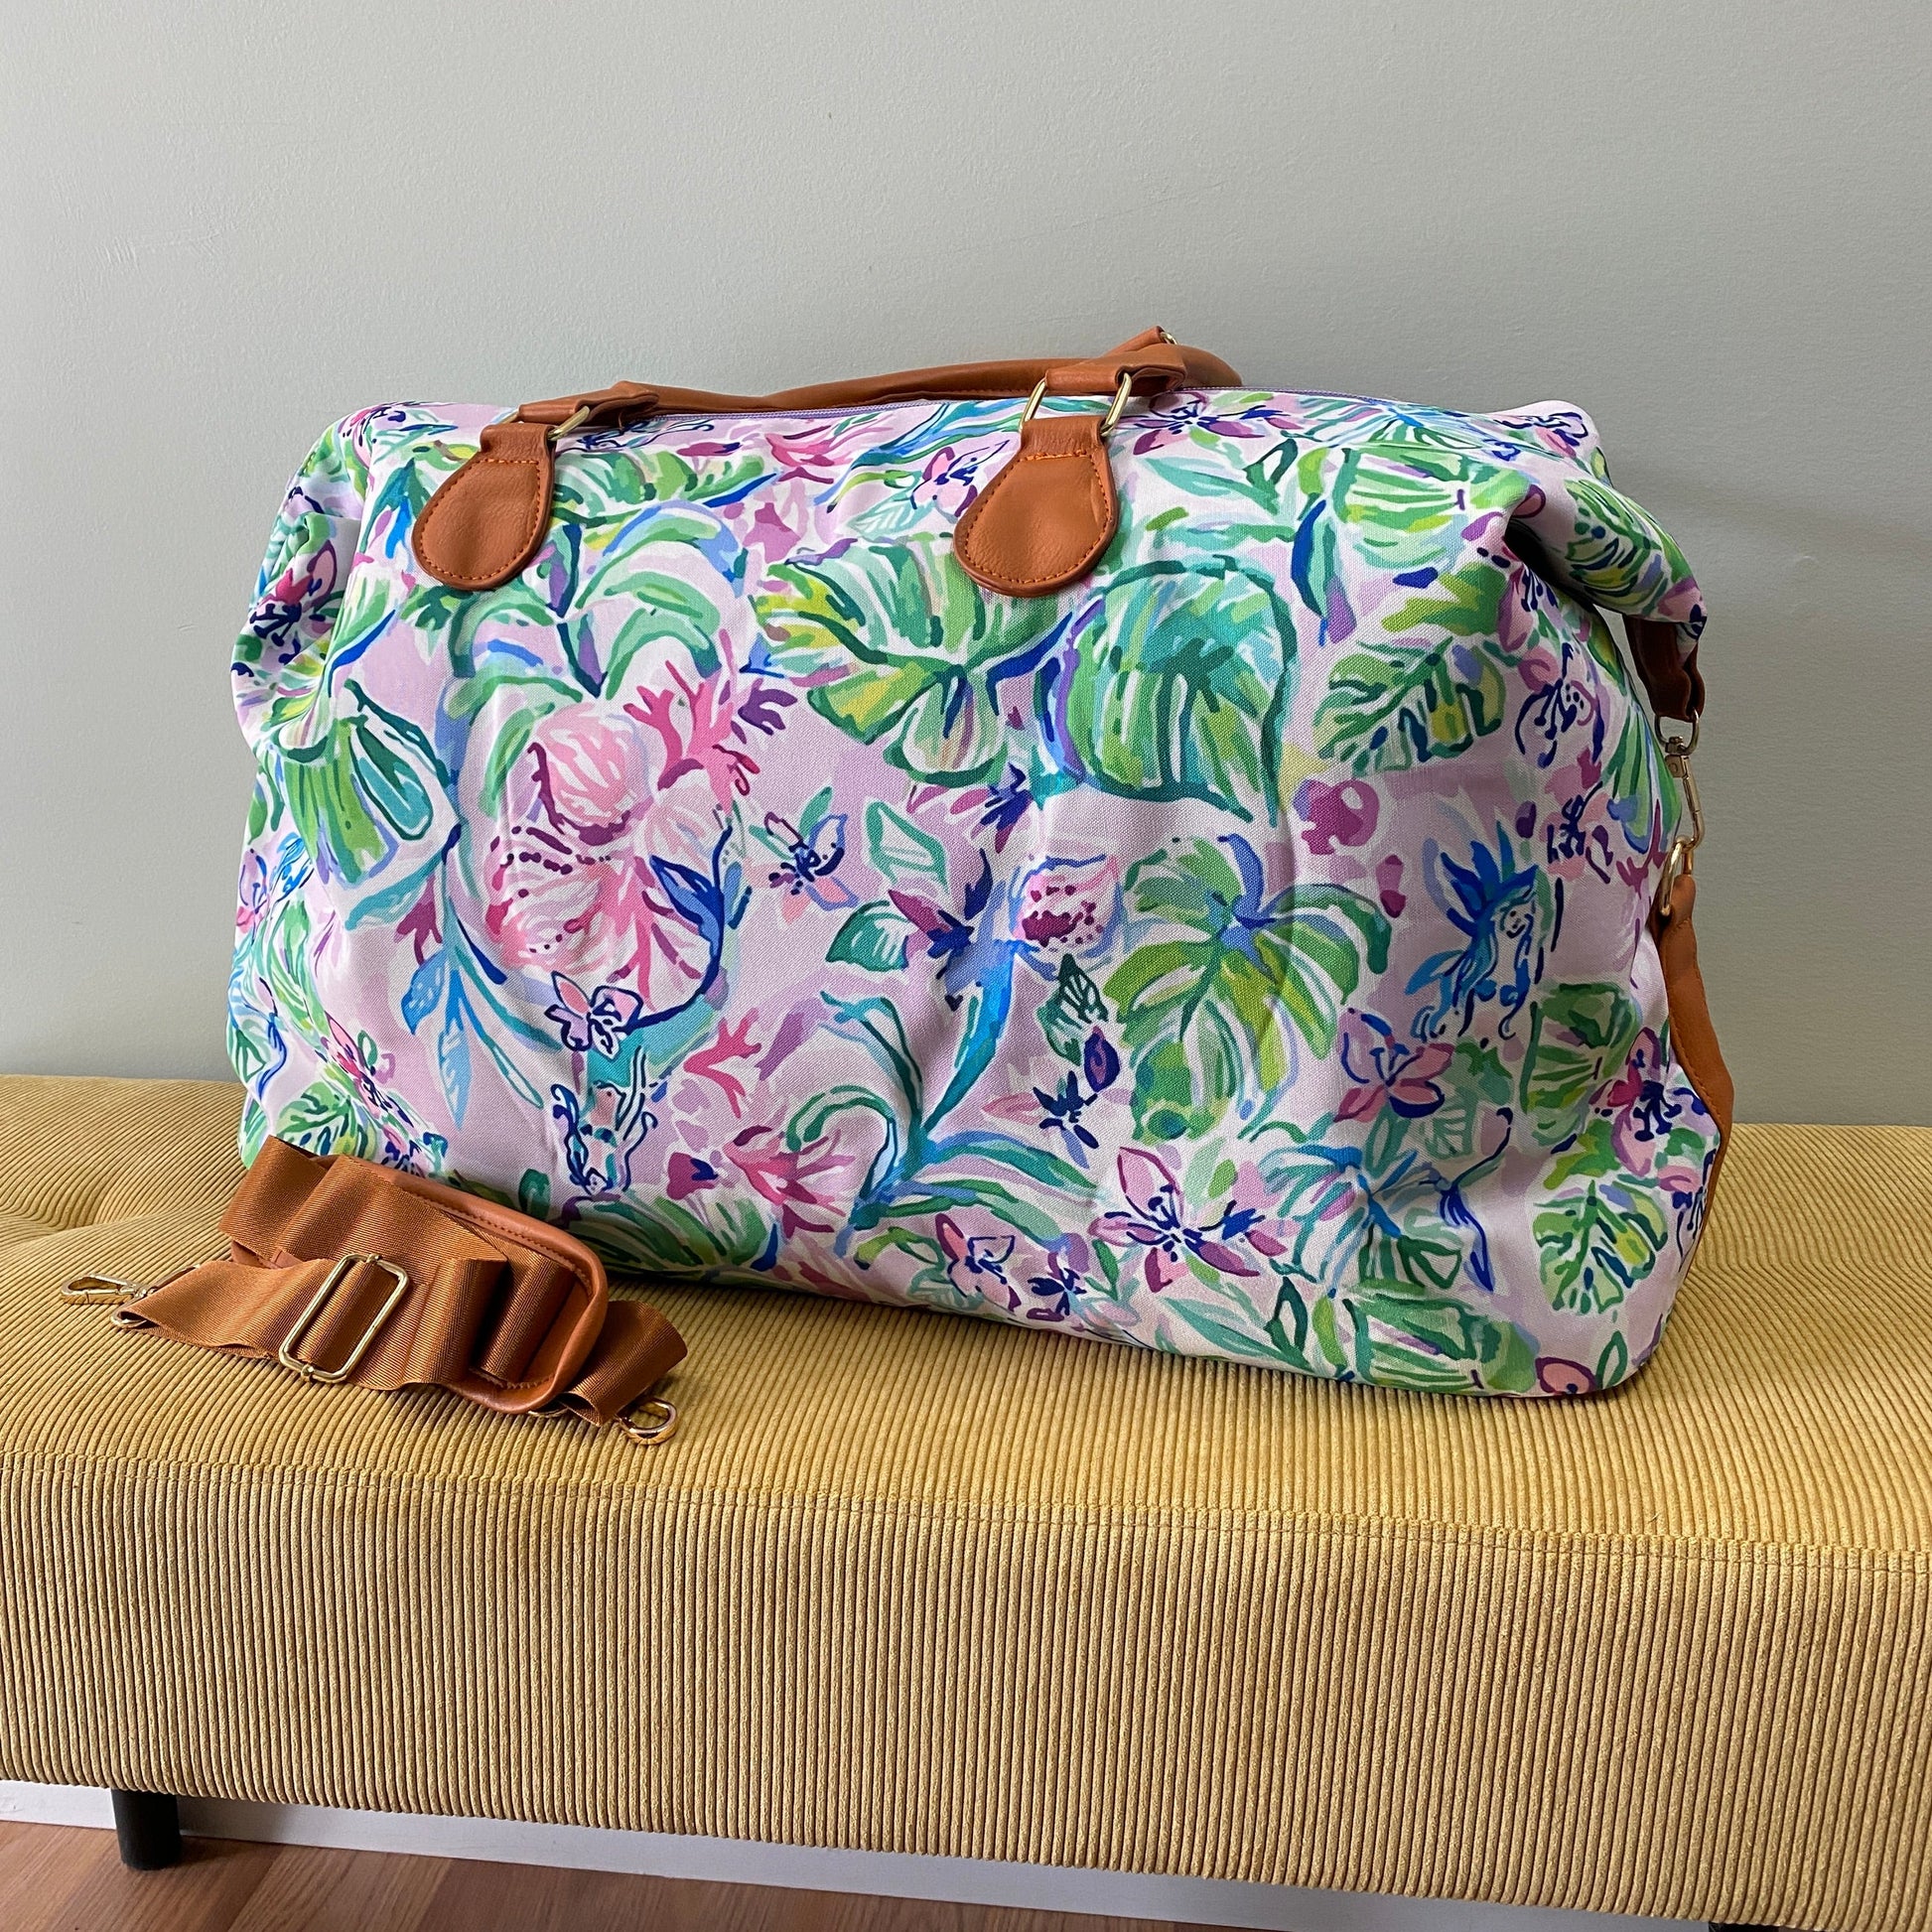 The Weekender Bag - Lavender Mermaid Palm